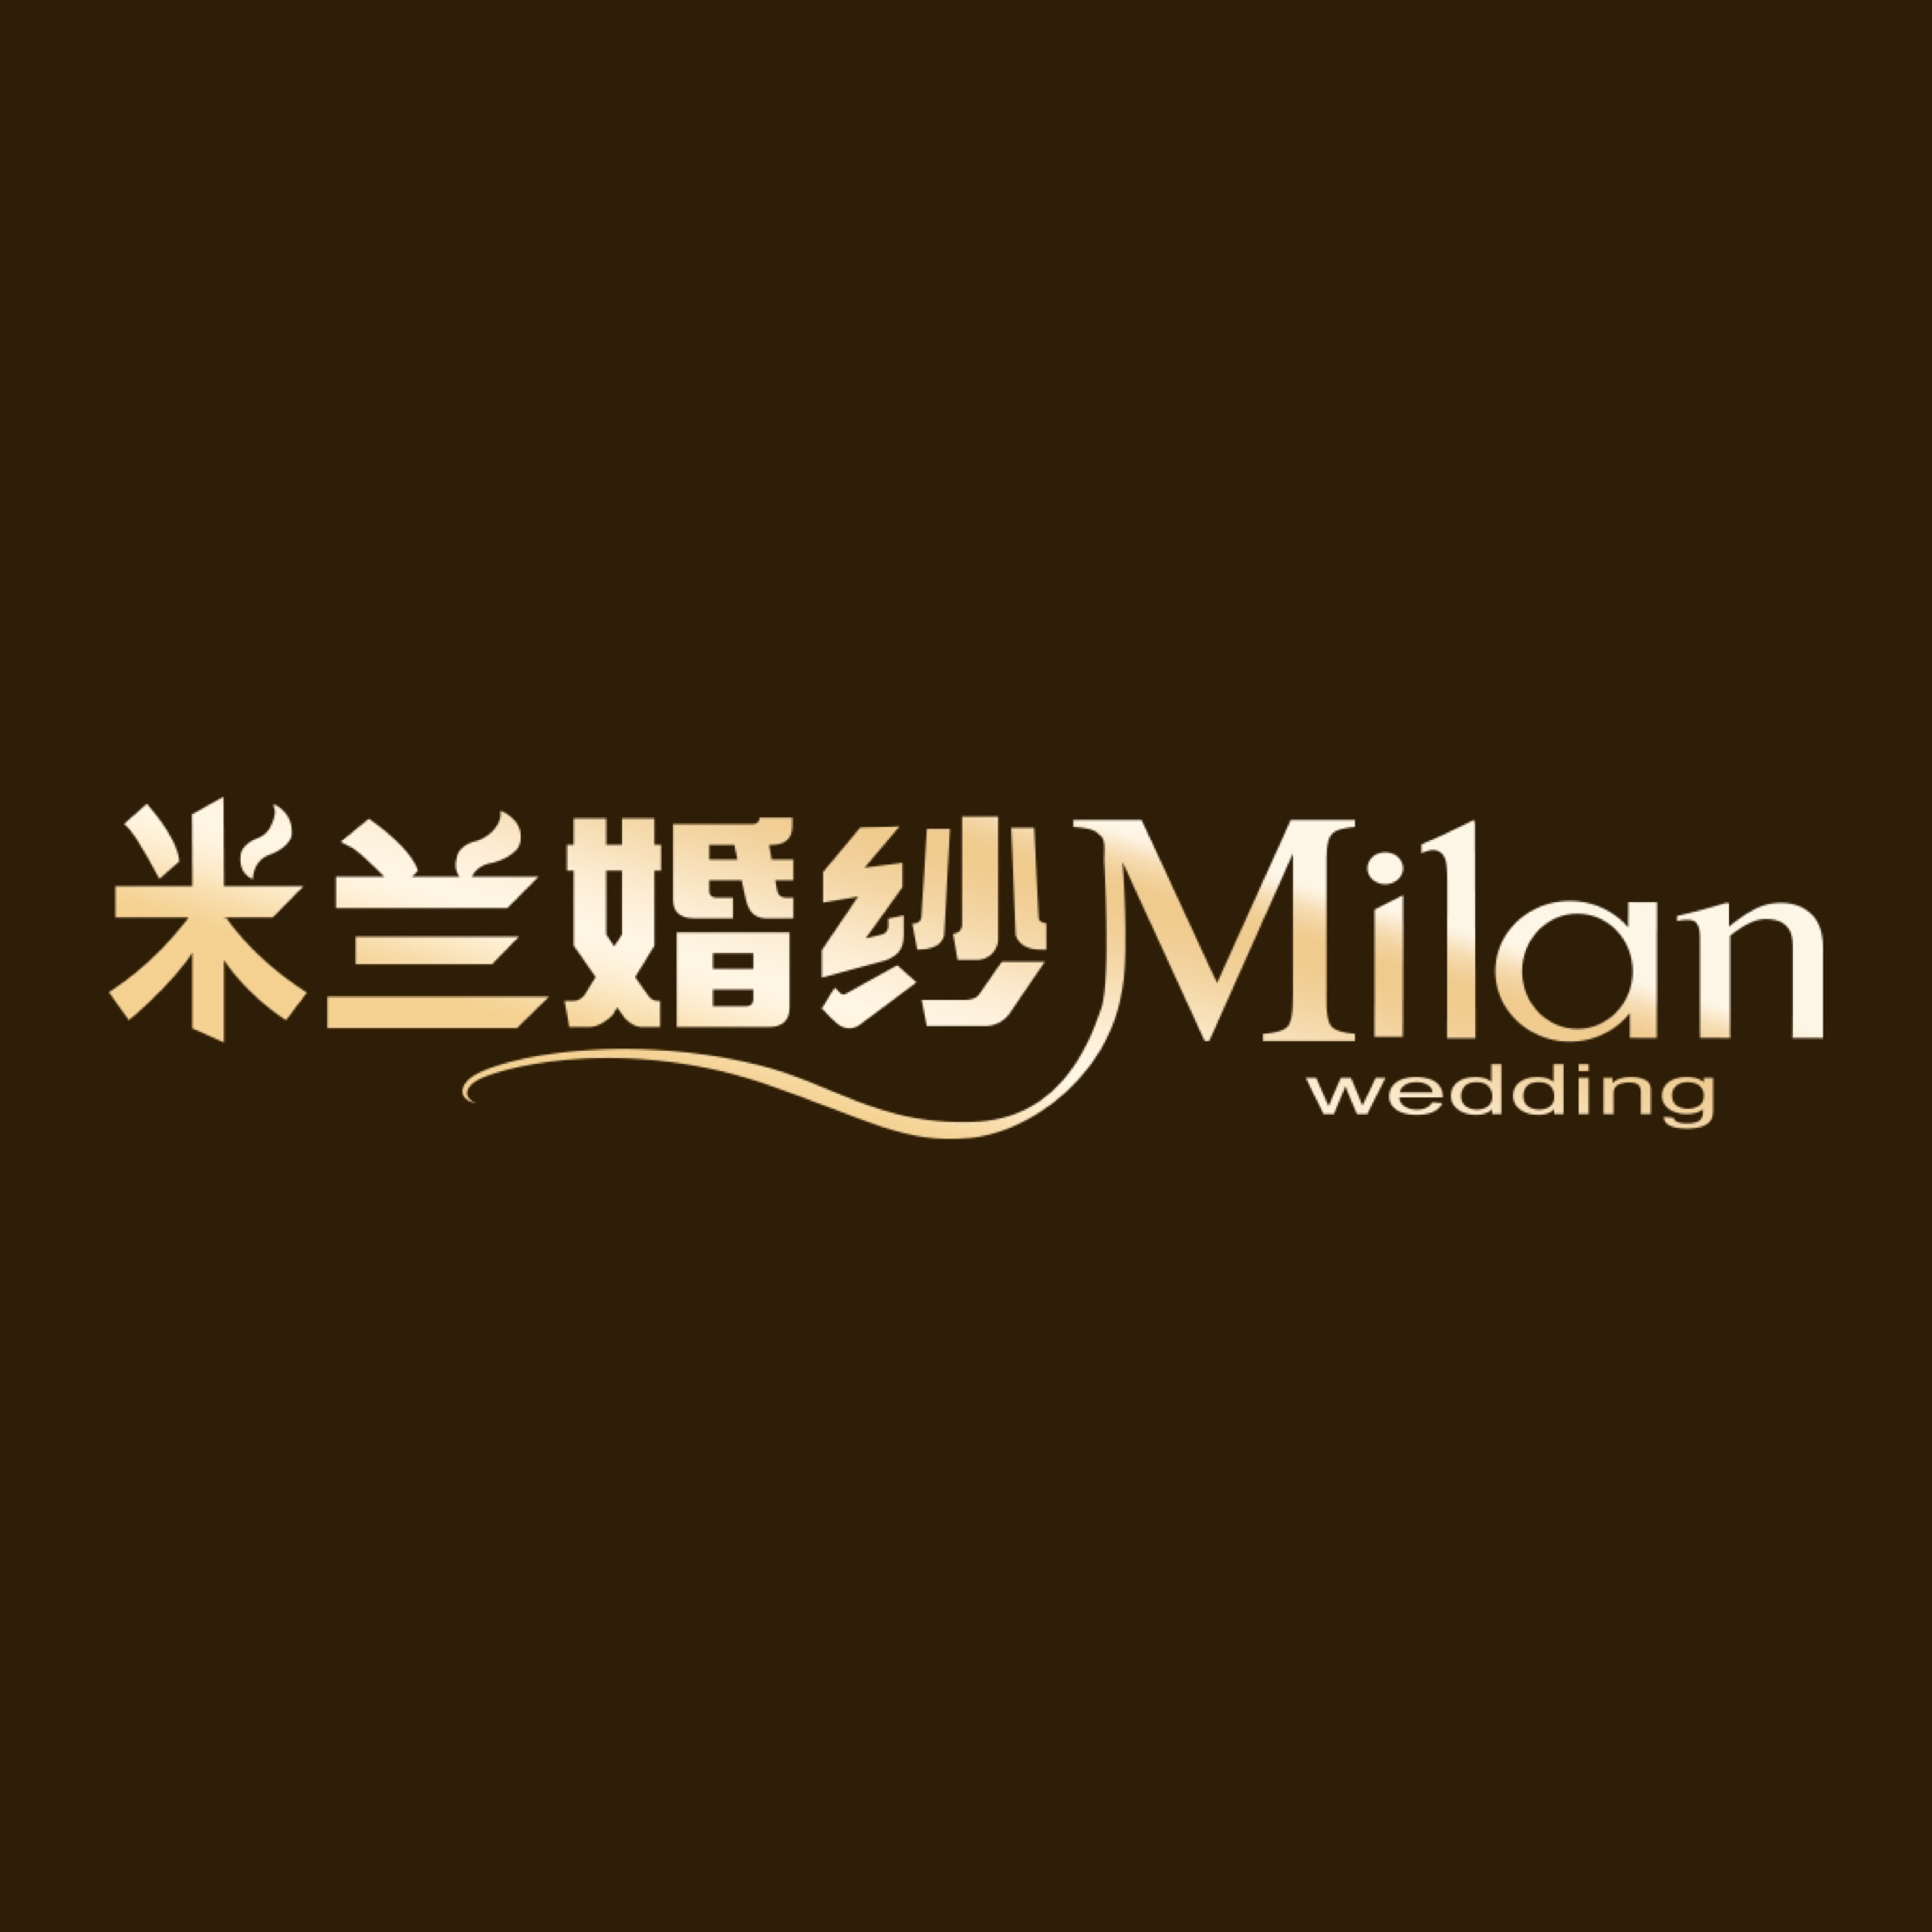 上海米兰婚纱摄影有限公司